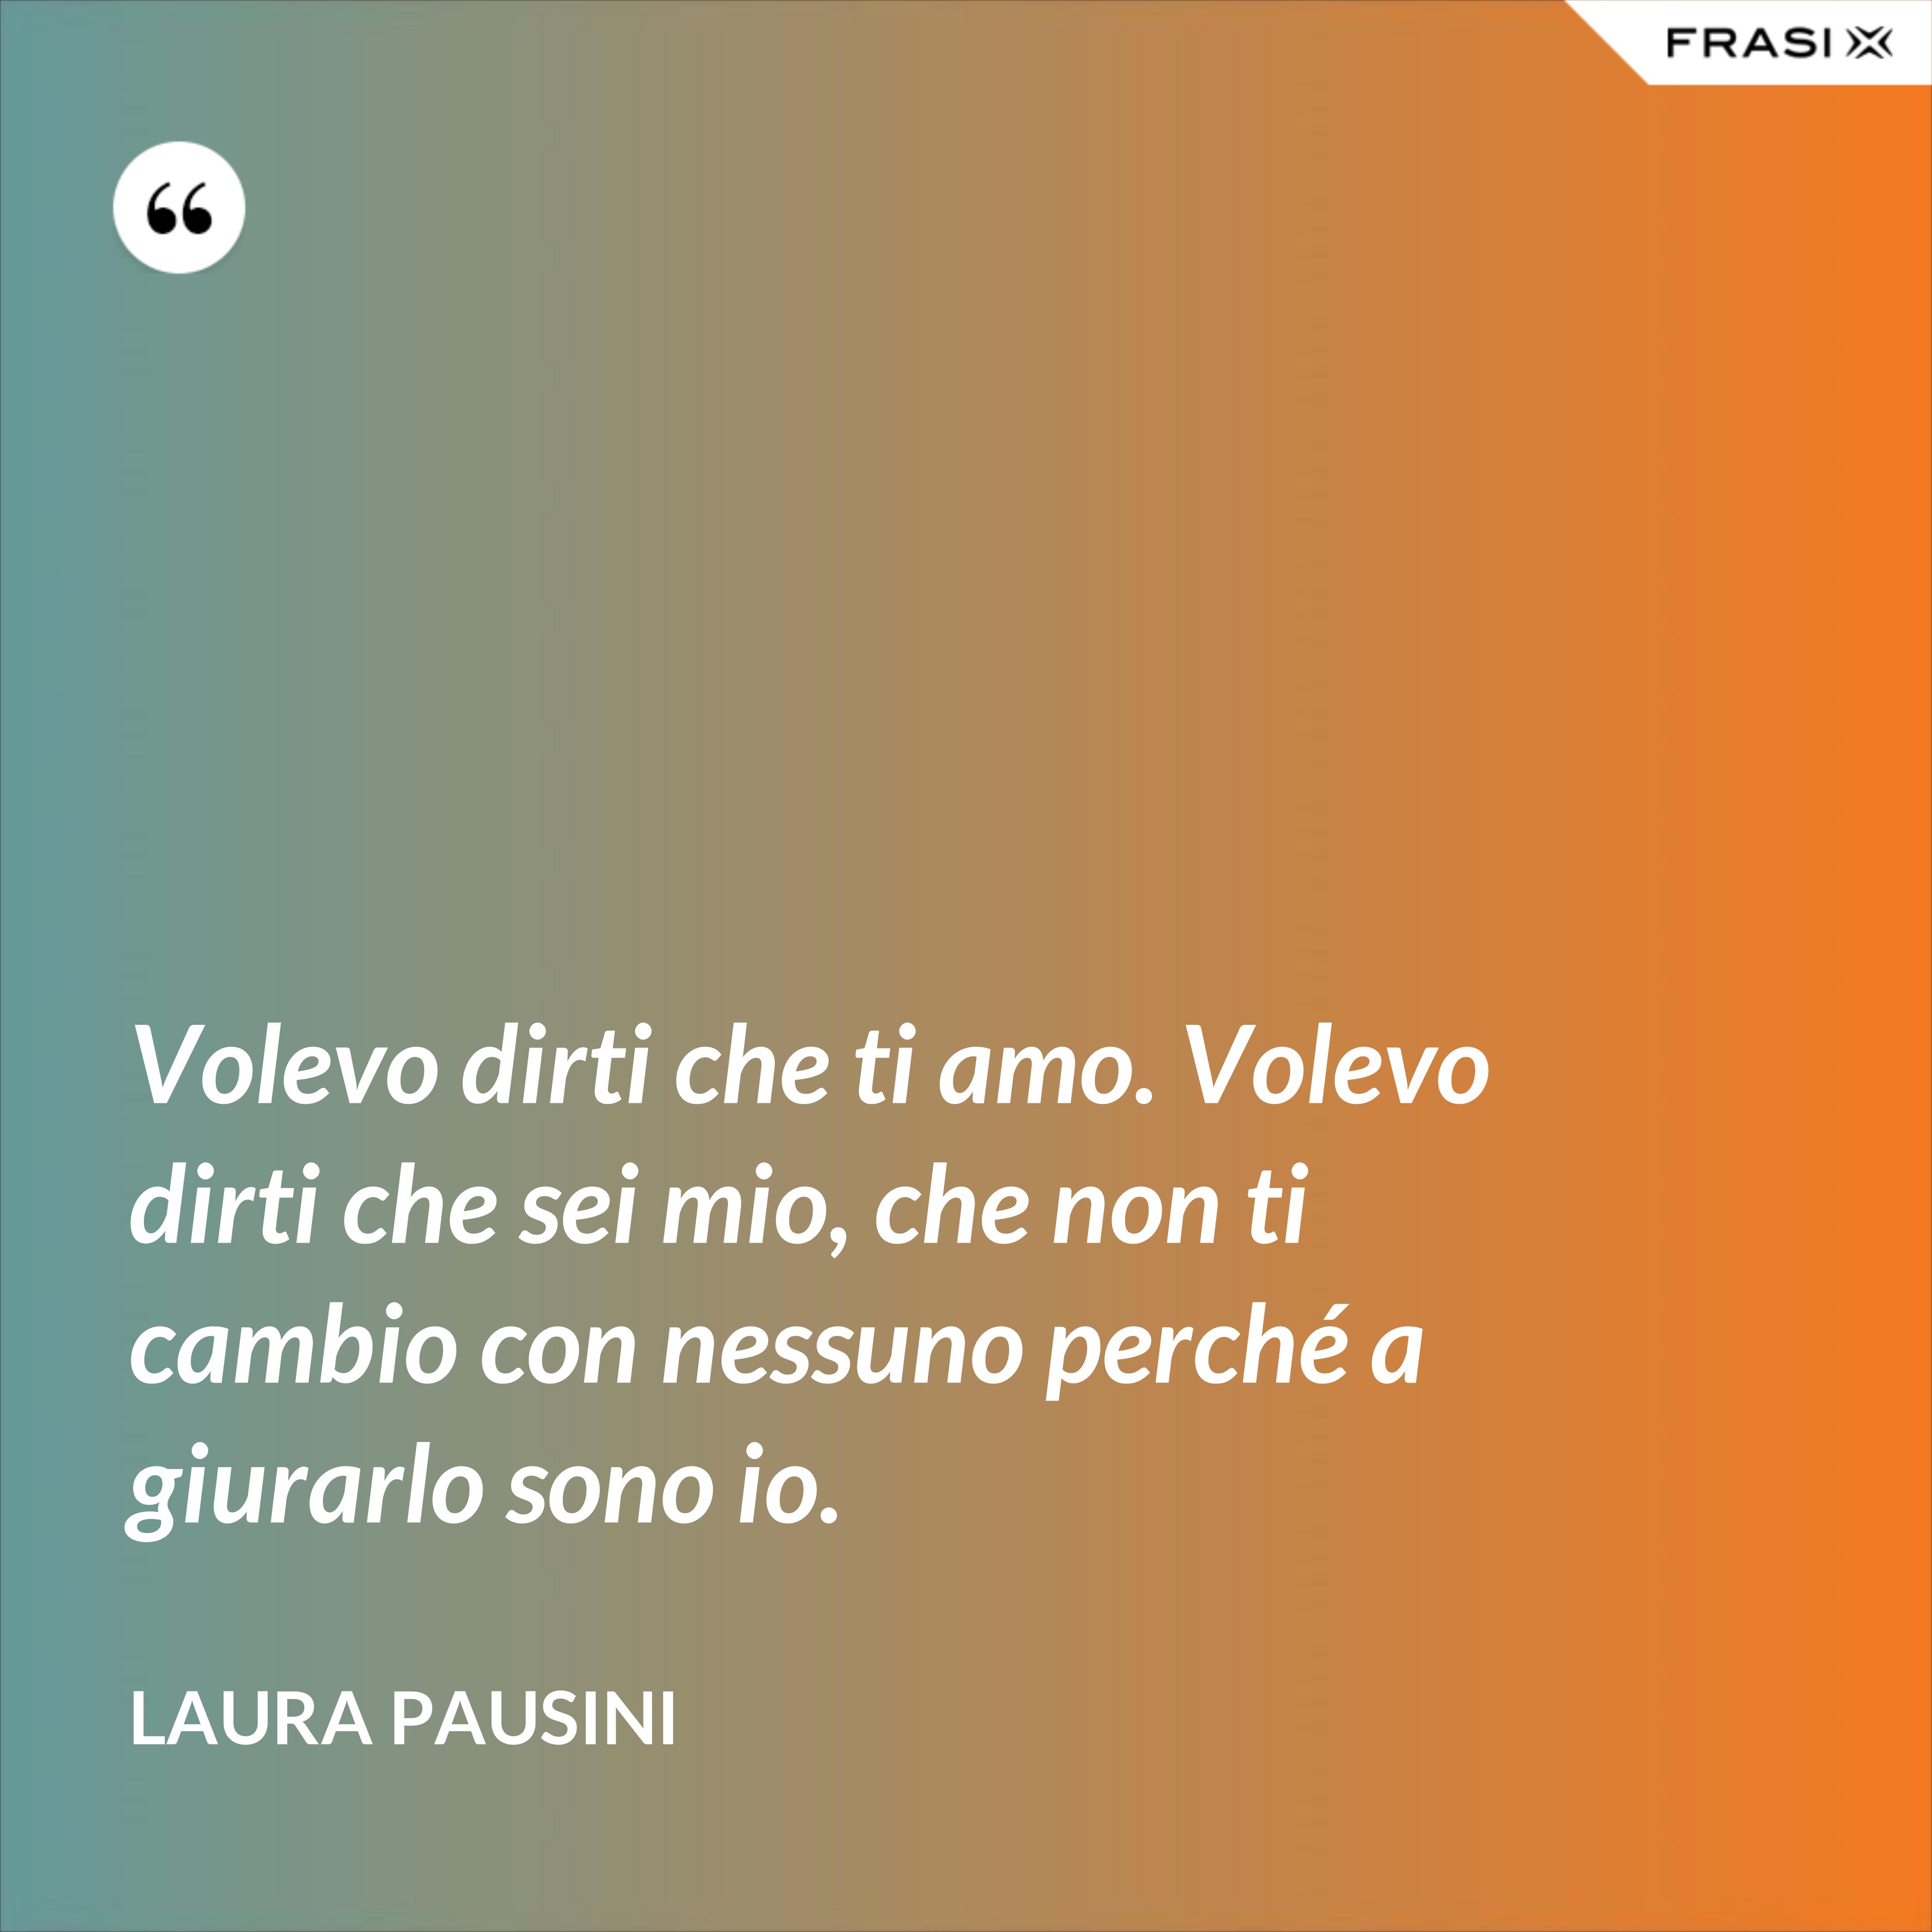 Volevo dirti che ti amo. Volevo dirti che sei mio, che non ti cambio con nessuno perché a giurarlo sono io. - Laura Pausini